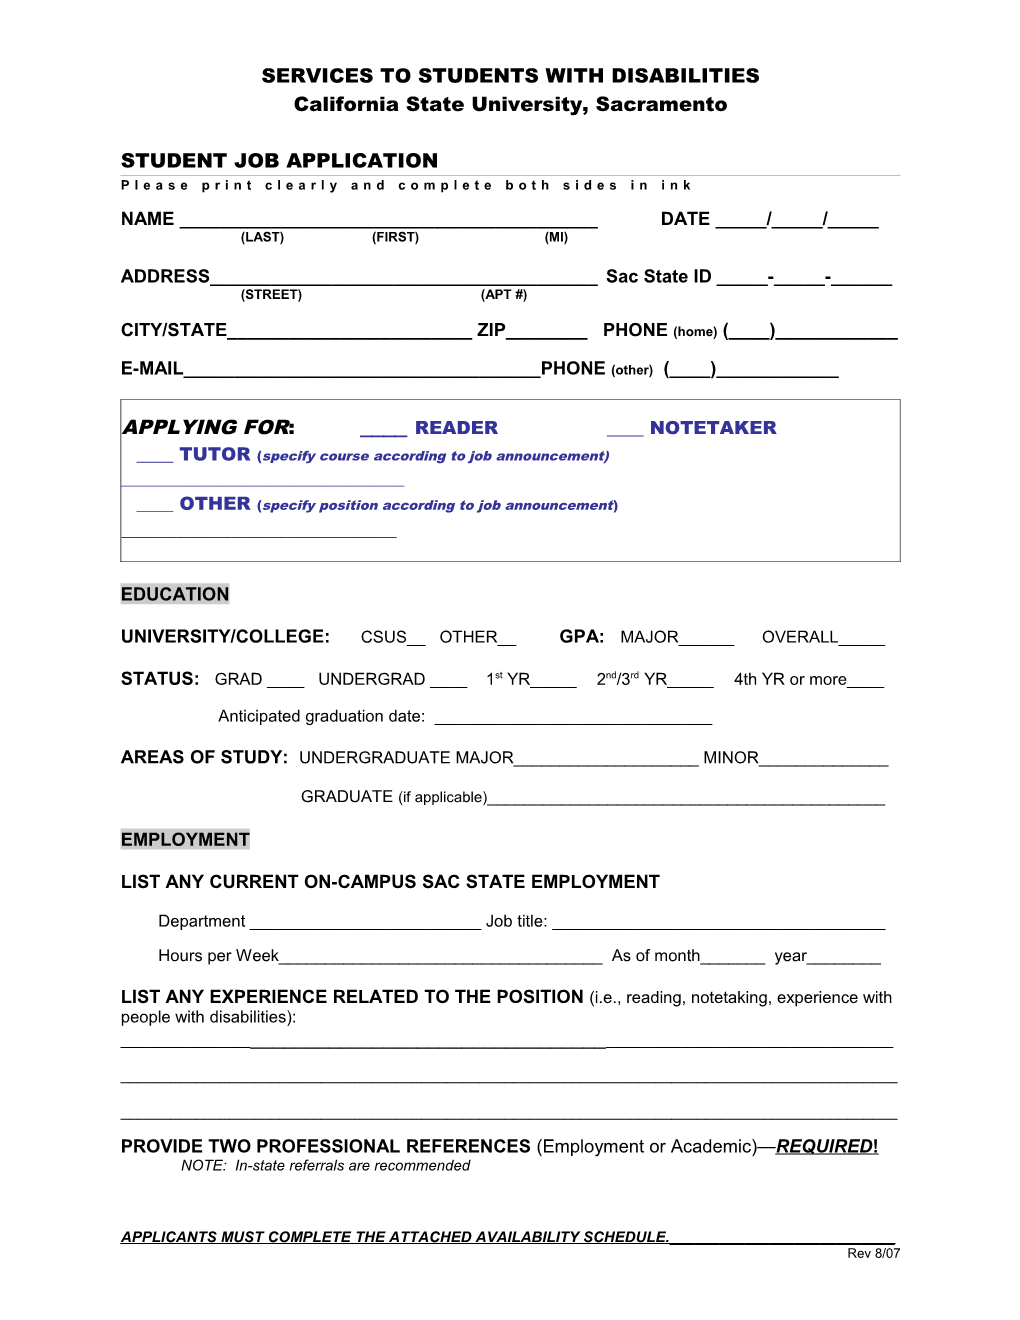 Reader/Notetaker Application Form